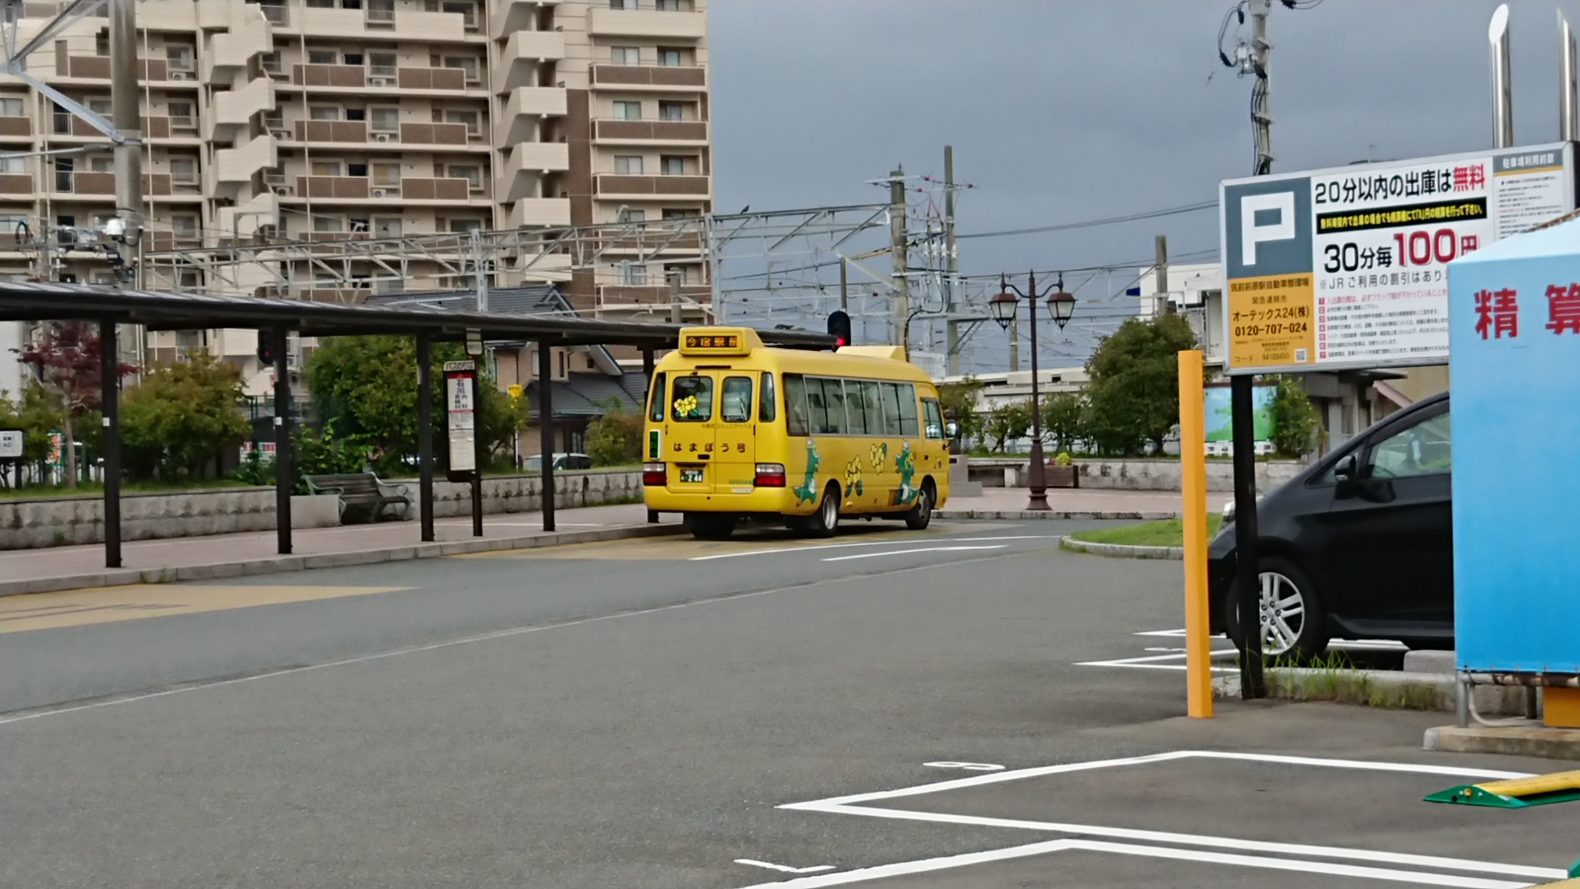 糸島市コミュニティバス はまぼう号 糸島のおでかけスポットを紹介するよ